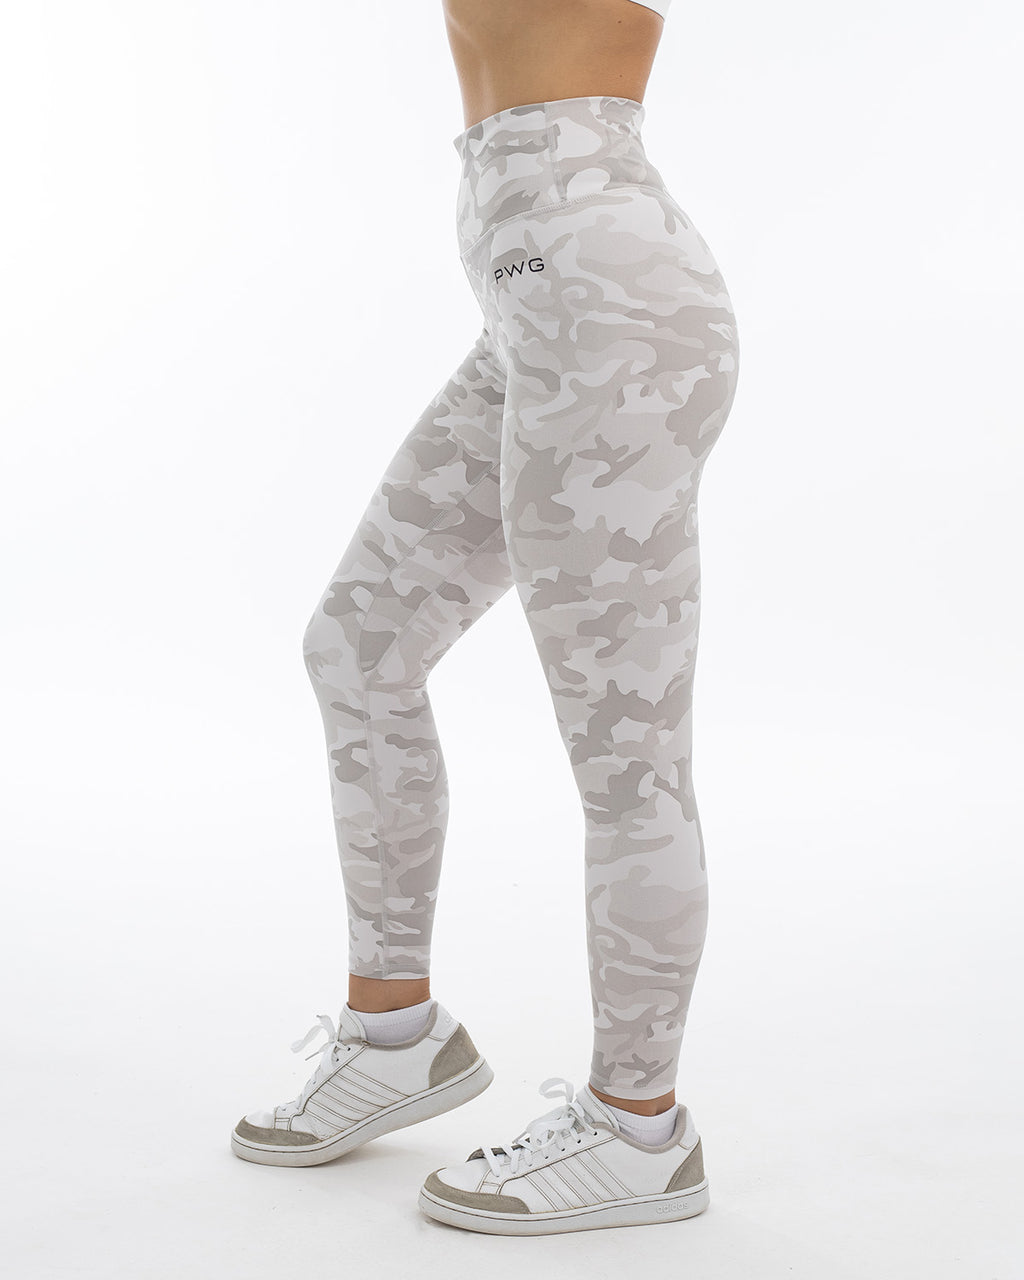 Echt Ombre Gray Leggings  Grey leggings, Clothes design, Fashion